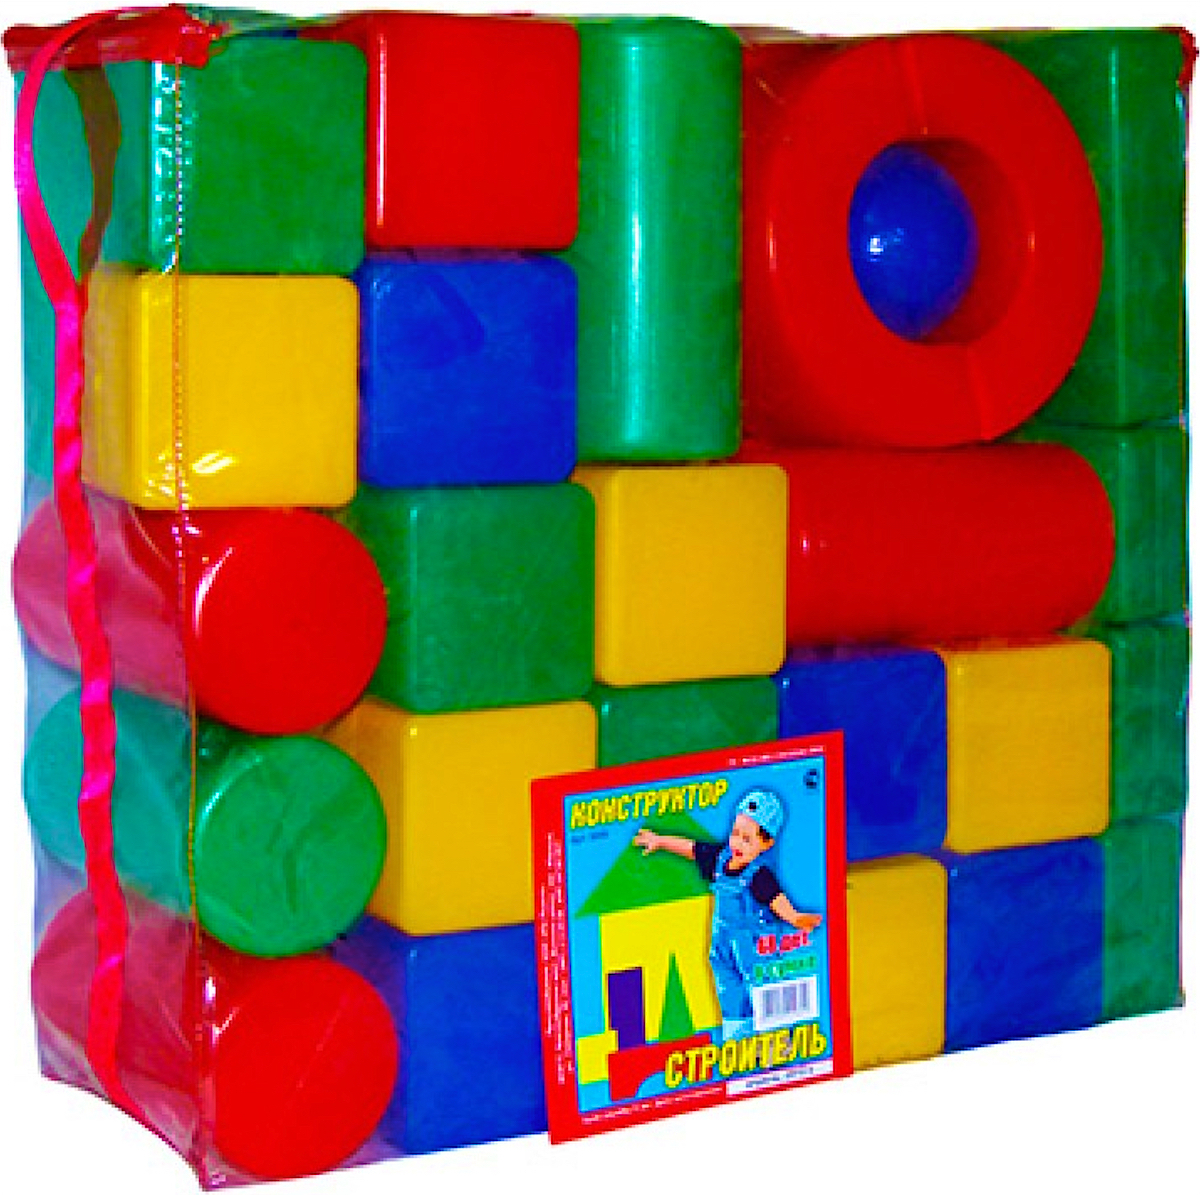 Кубики большие цена. 5020 Набор Юг-пласт "кубики" (8 деталей). Конструктор 3+ 10д. (Строитель) "Юг-пласт" арт.5000. Крупный конструктор для детей. Конструктор пластмассовый.